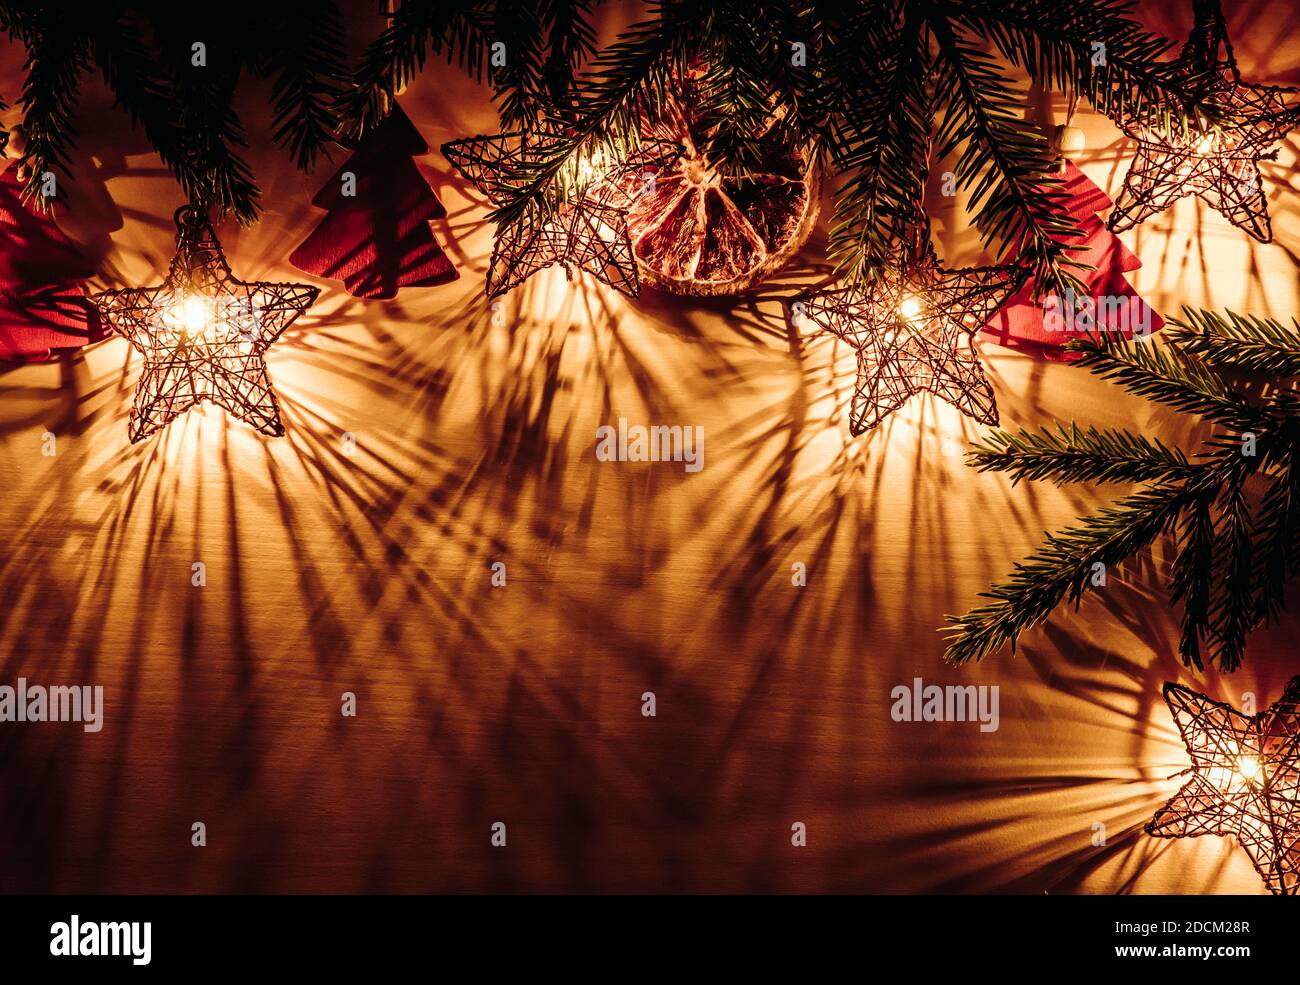 Sfondo di Natale, bordo superiore con rami di abete rosso forma stella luci partito illuminato, a fette arancio secco e figurine a forma di albero rosso. Foto Stock